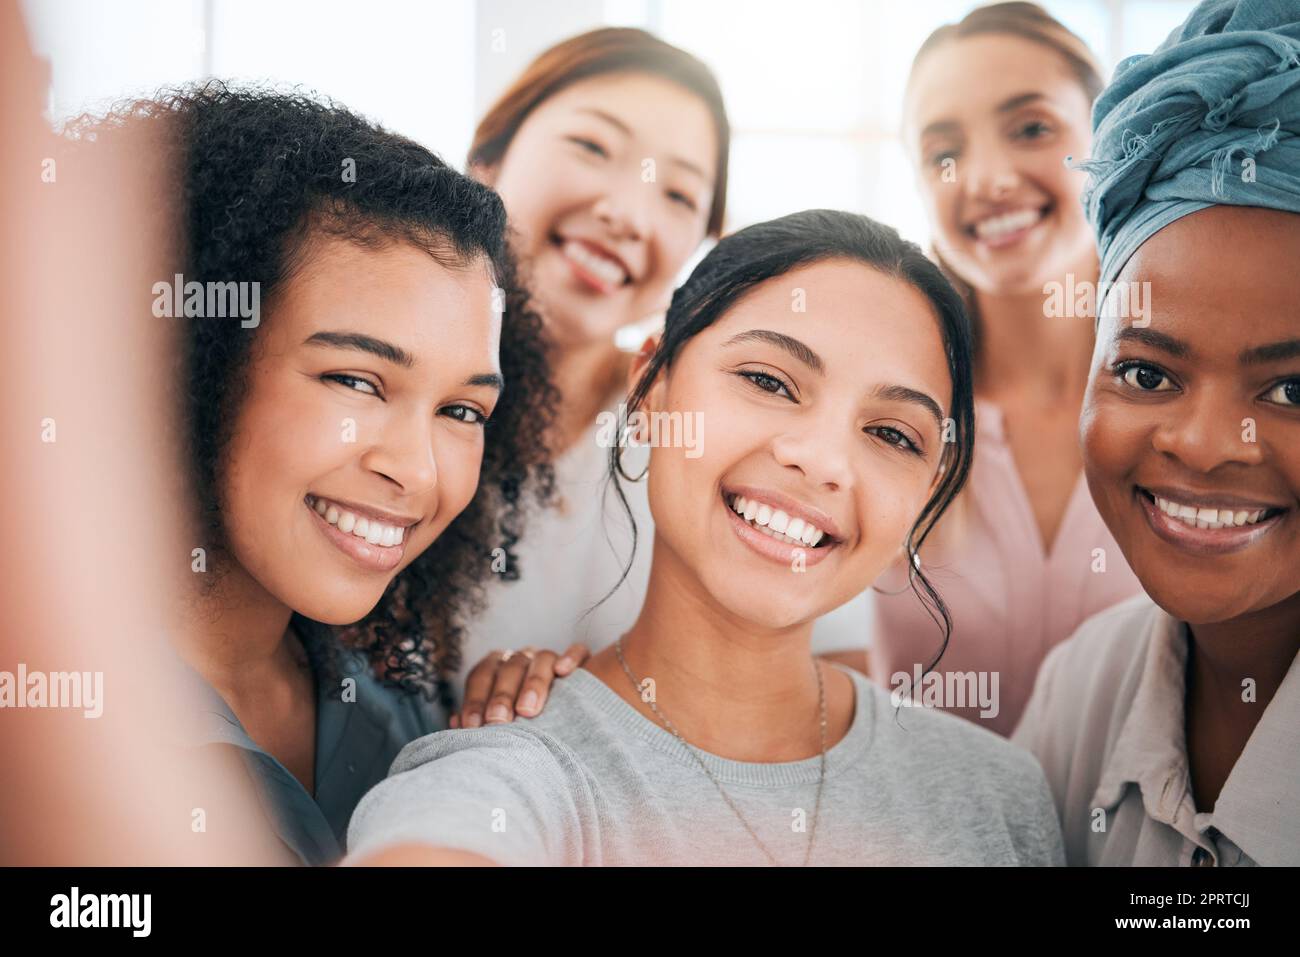 Diversität von Geschäftsfrauen in Selfie mit Lächeln für Erfolg, Motivation und Glück durch Teamarbeit für Social-Media-Inhalte des Unternehmens. Junge Personengruppe oder Influencer im Frauenbild Stockfoto